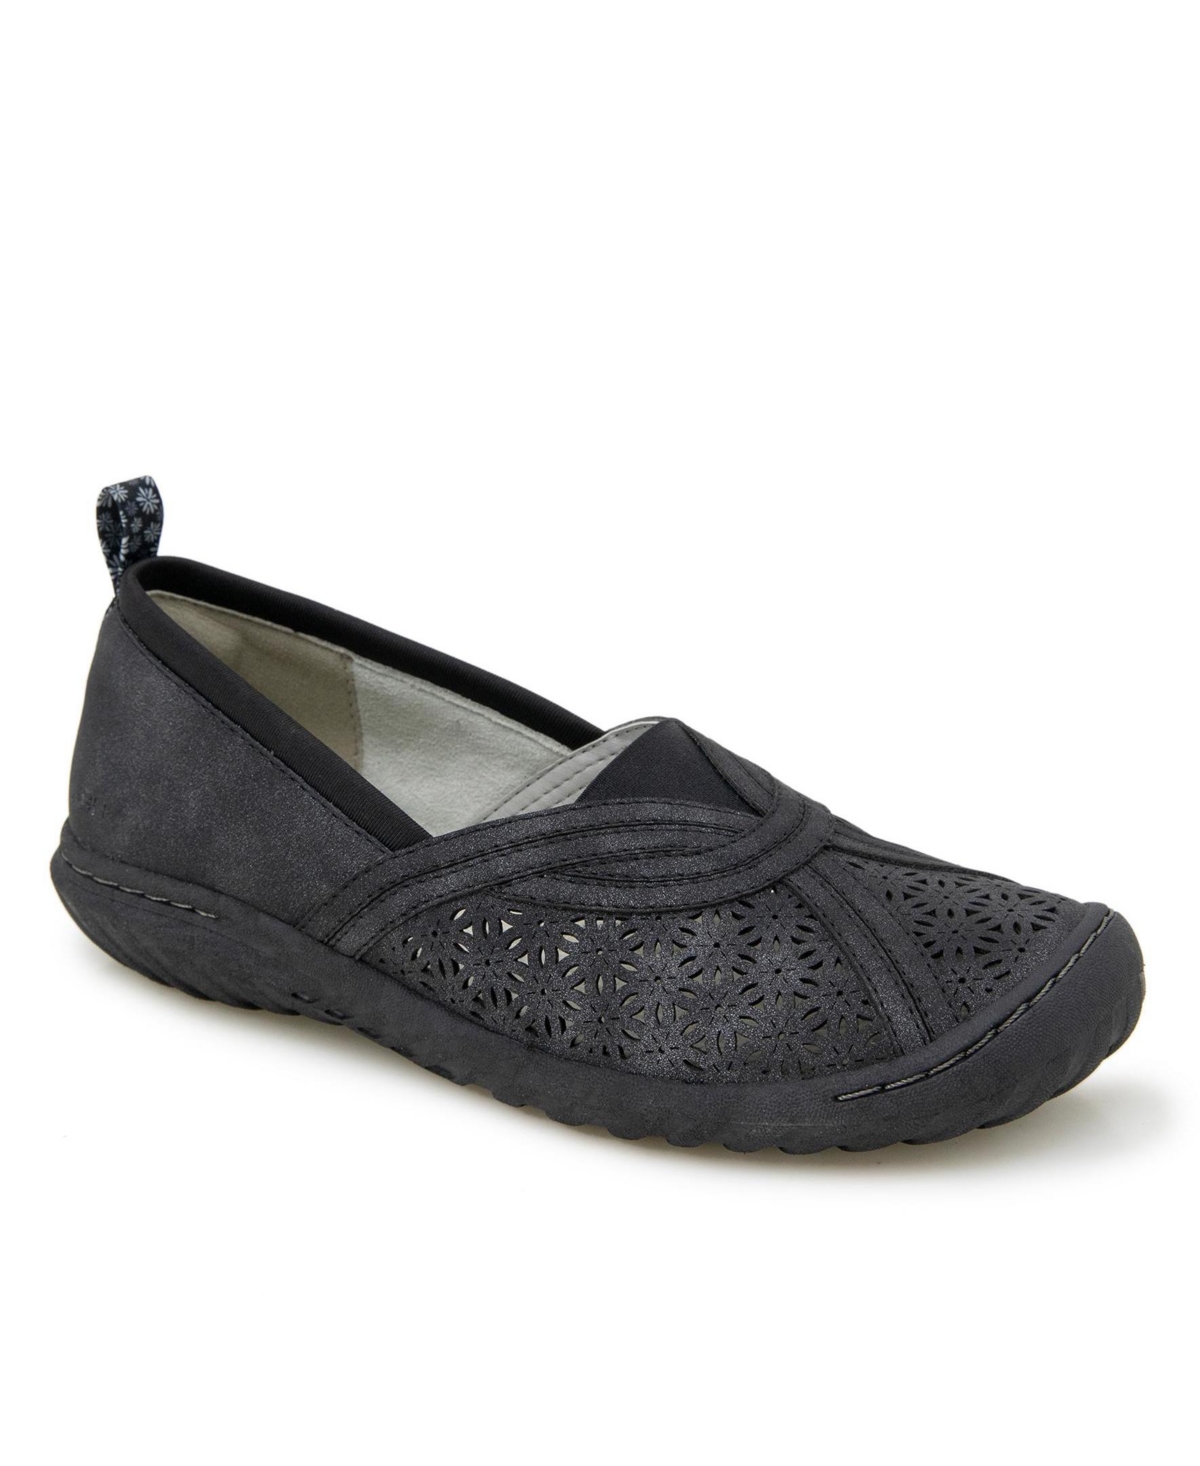 Women's Florida Slip-On Flat Shoe - Black Shimmer